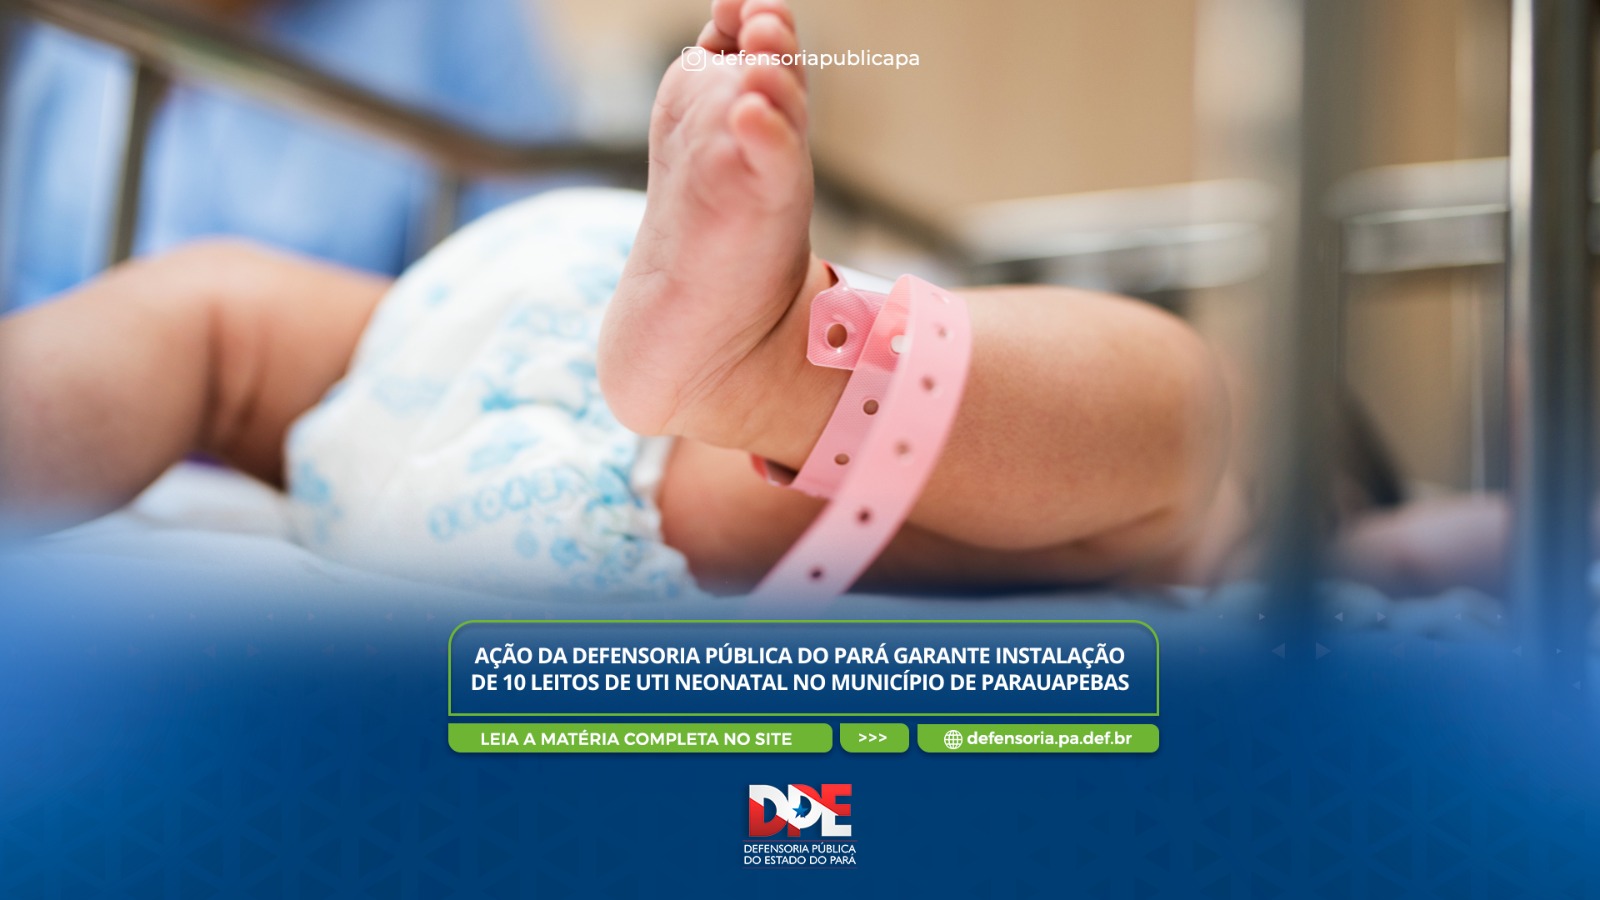 Ação da Defensoria Pública do Pará garante instalação de 10 leitos de UTI neonatal no município de Parauapebas